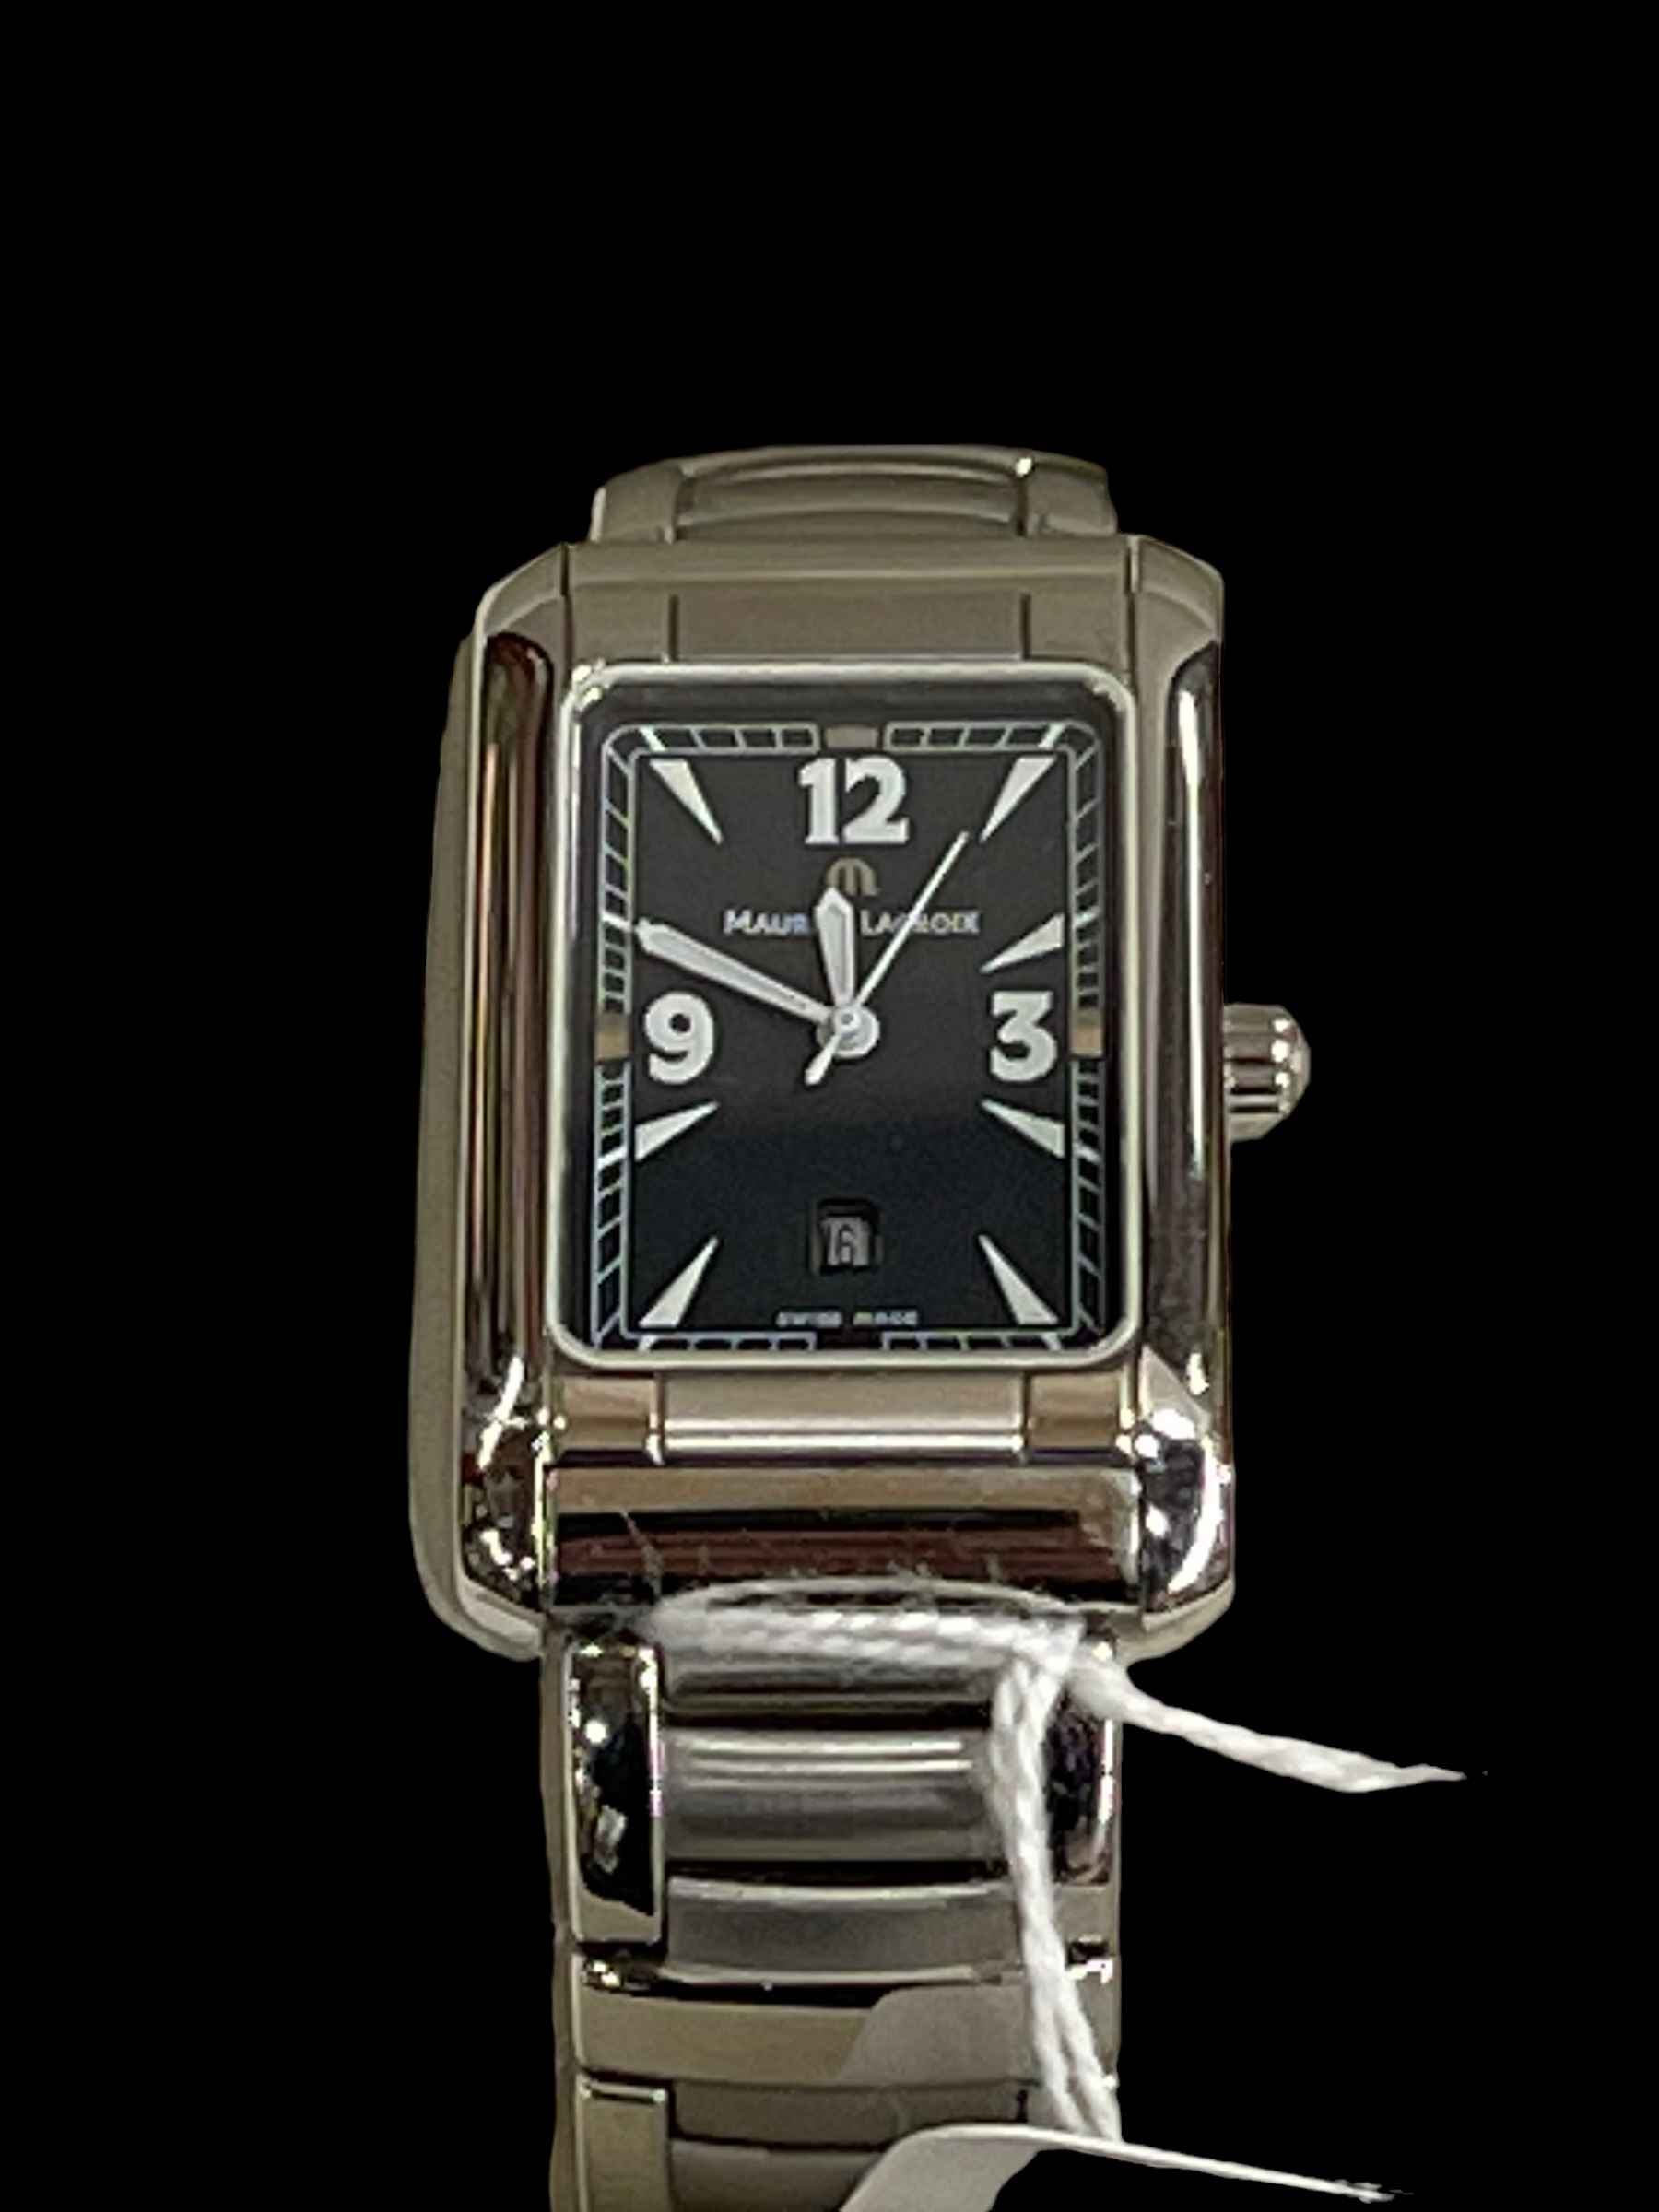 Maurice Lacroix gents wristwatch.